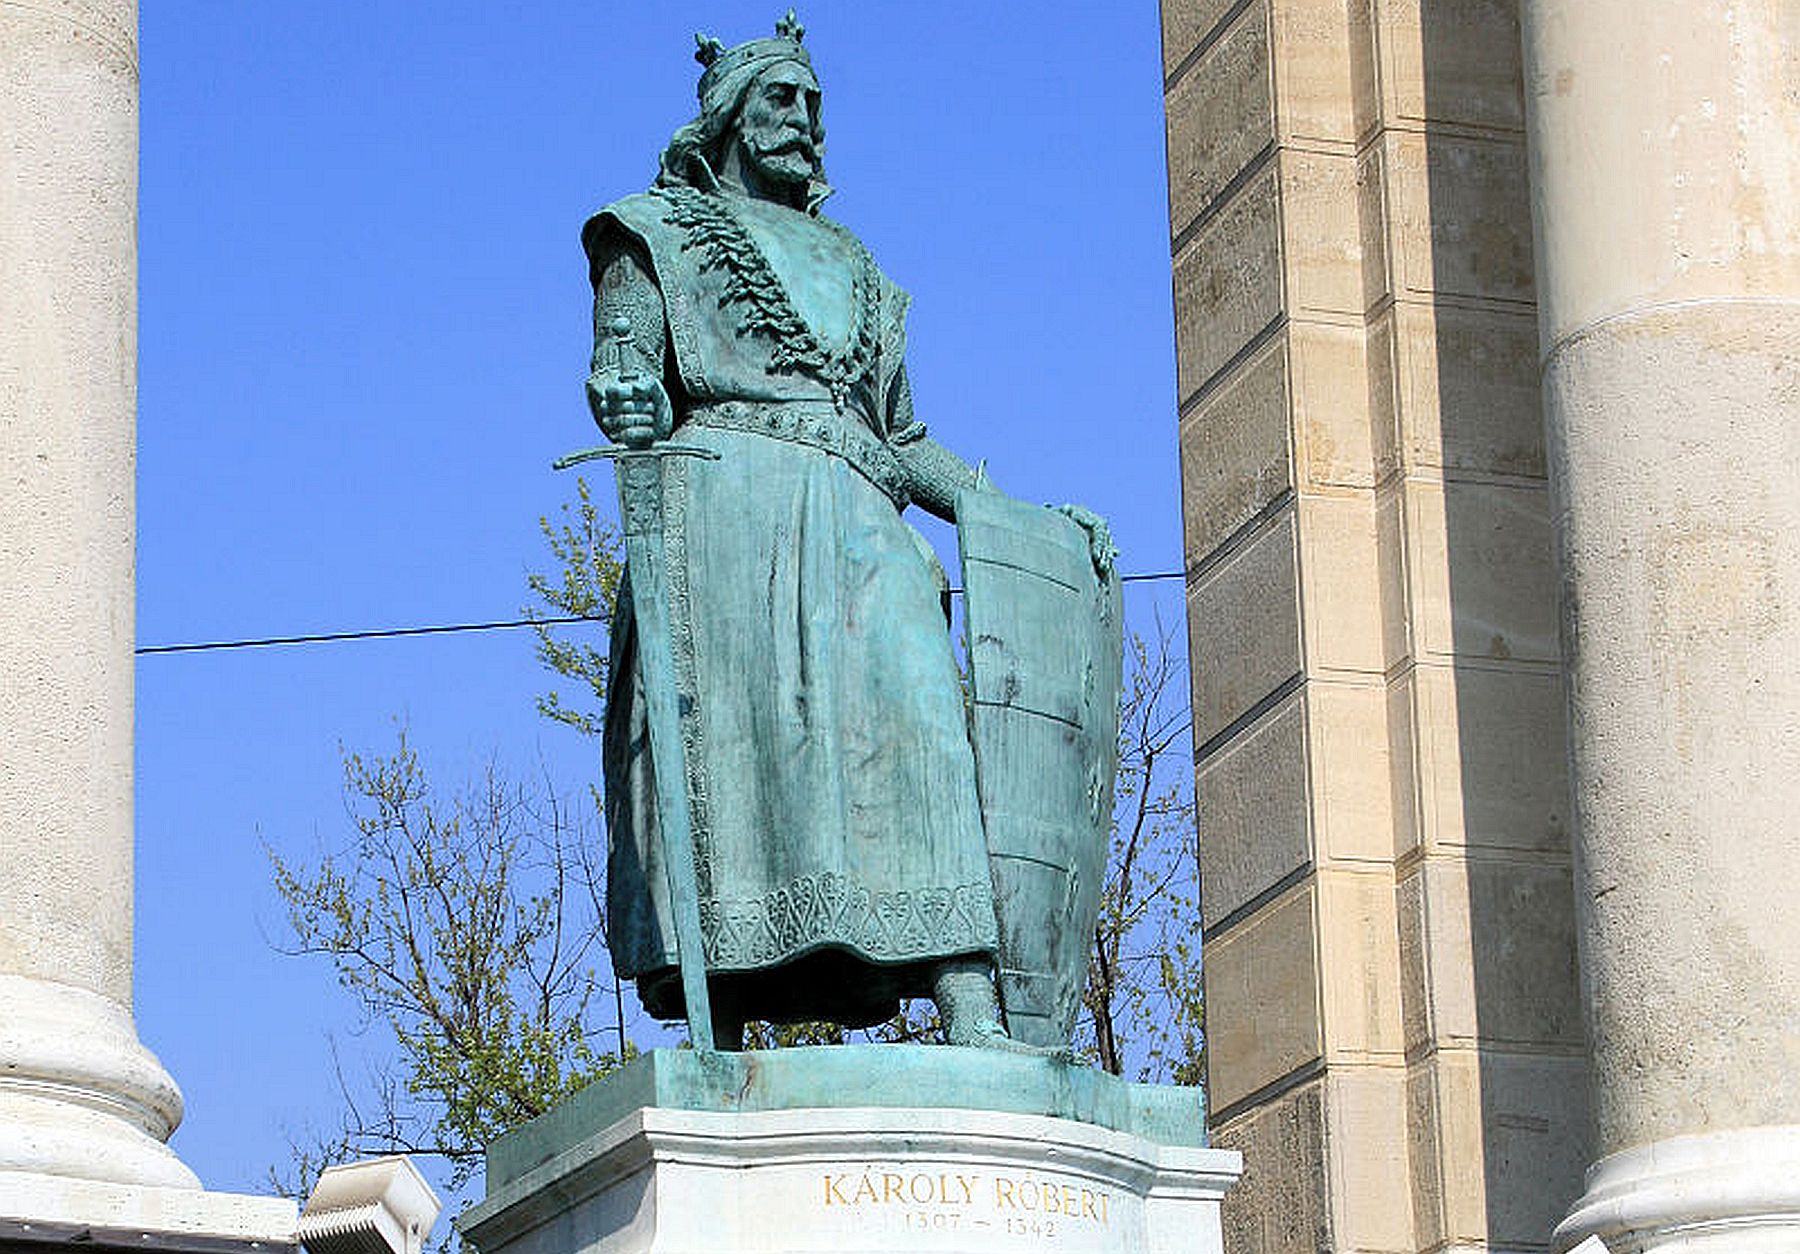 1310. augusztus 27-én volt Károly Róbert harmadik koronázása Székesfehérváron